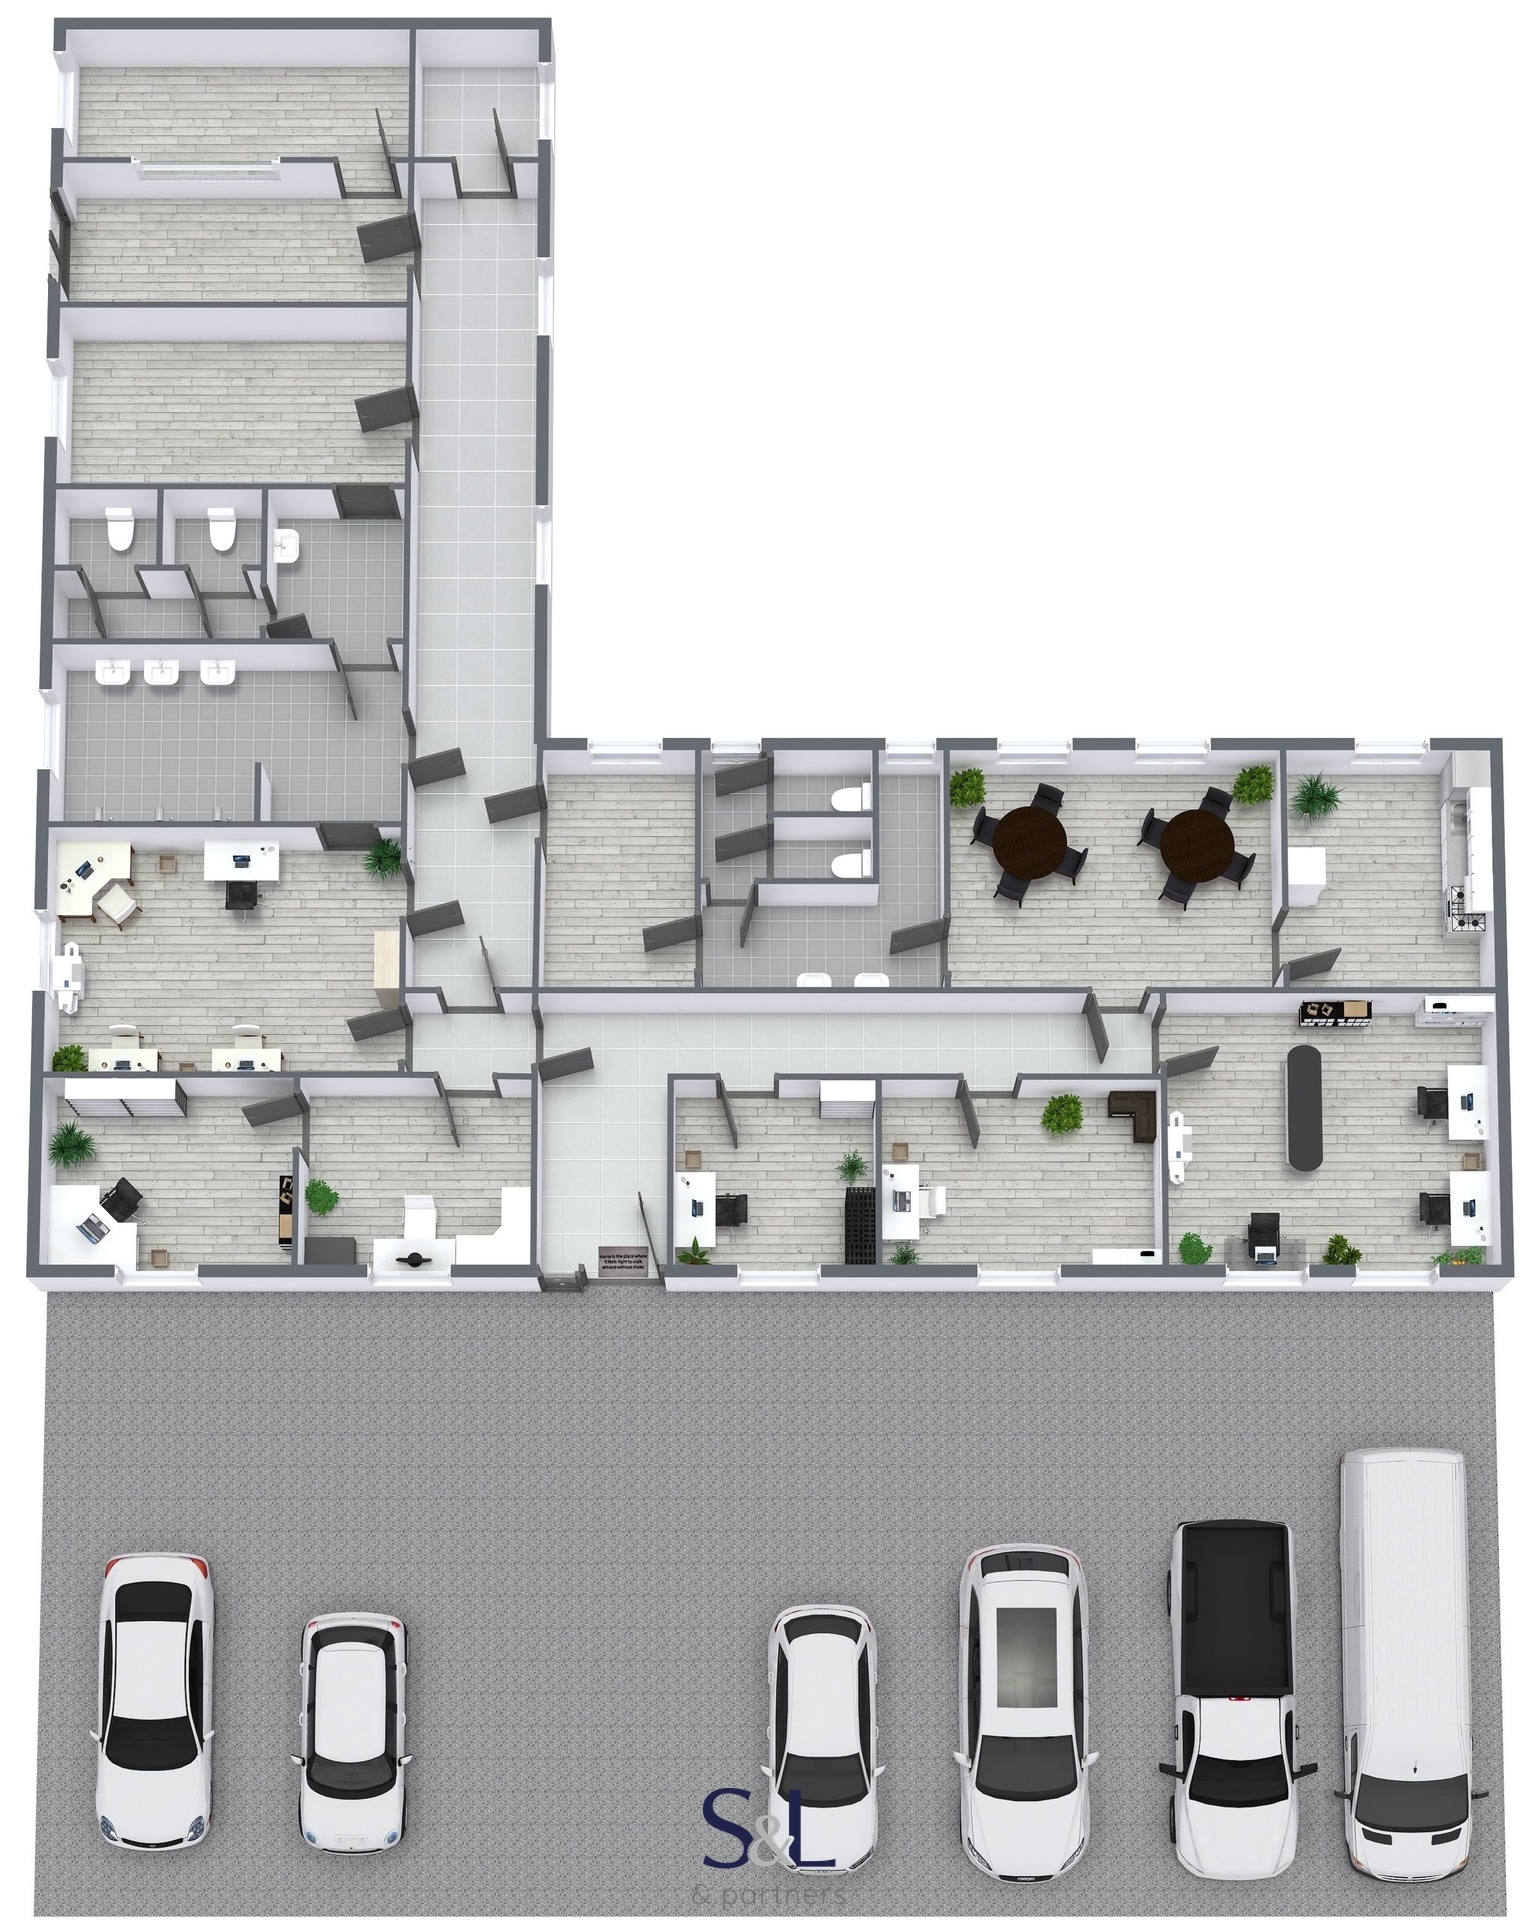 Bohatice - Areal - 1. Floor - 3D Floor Plan